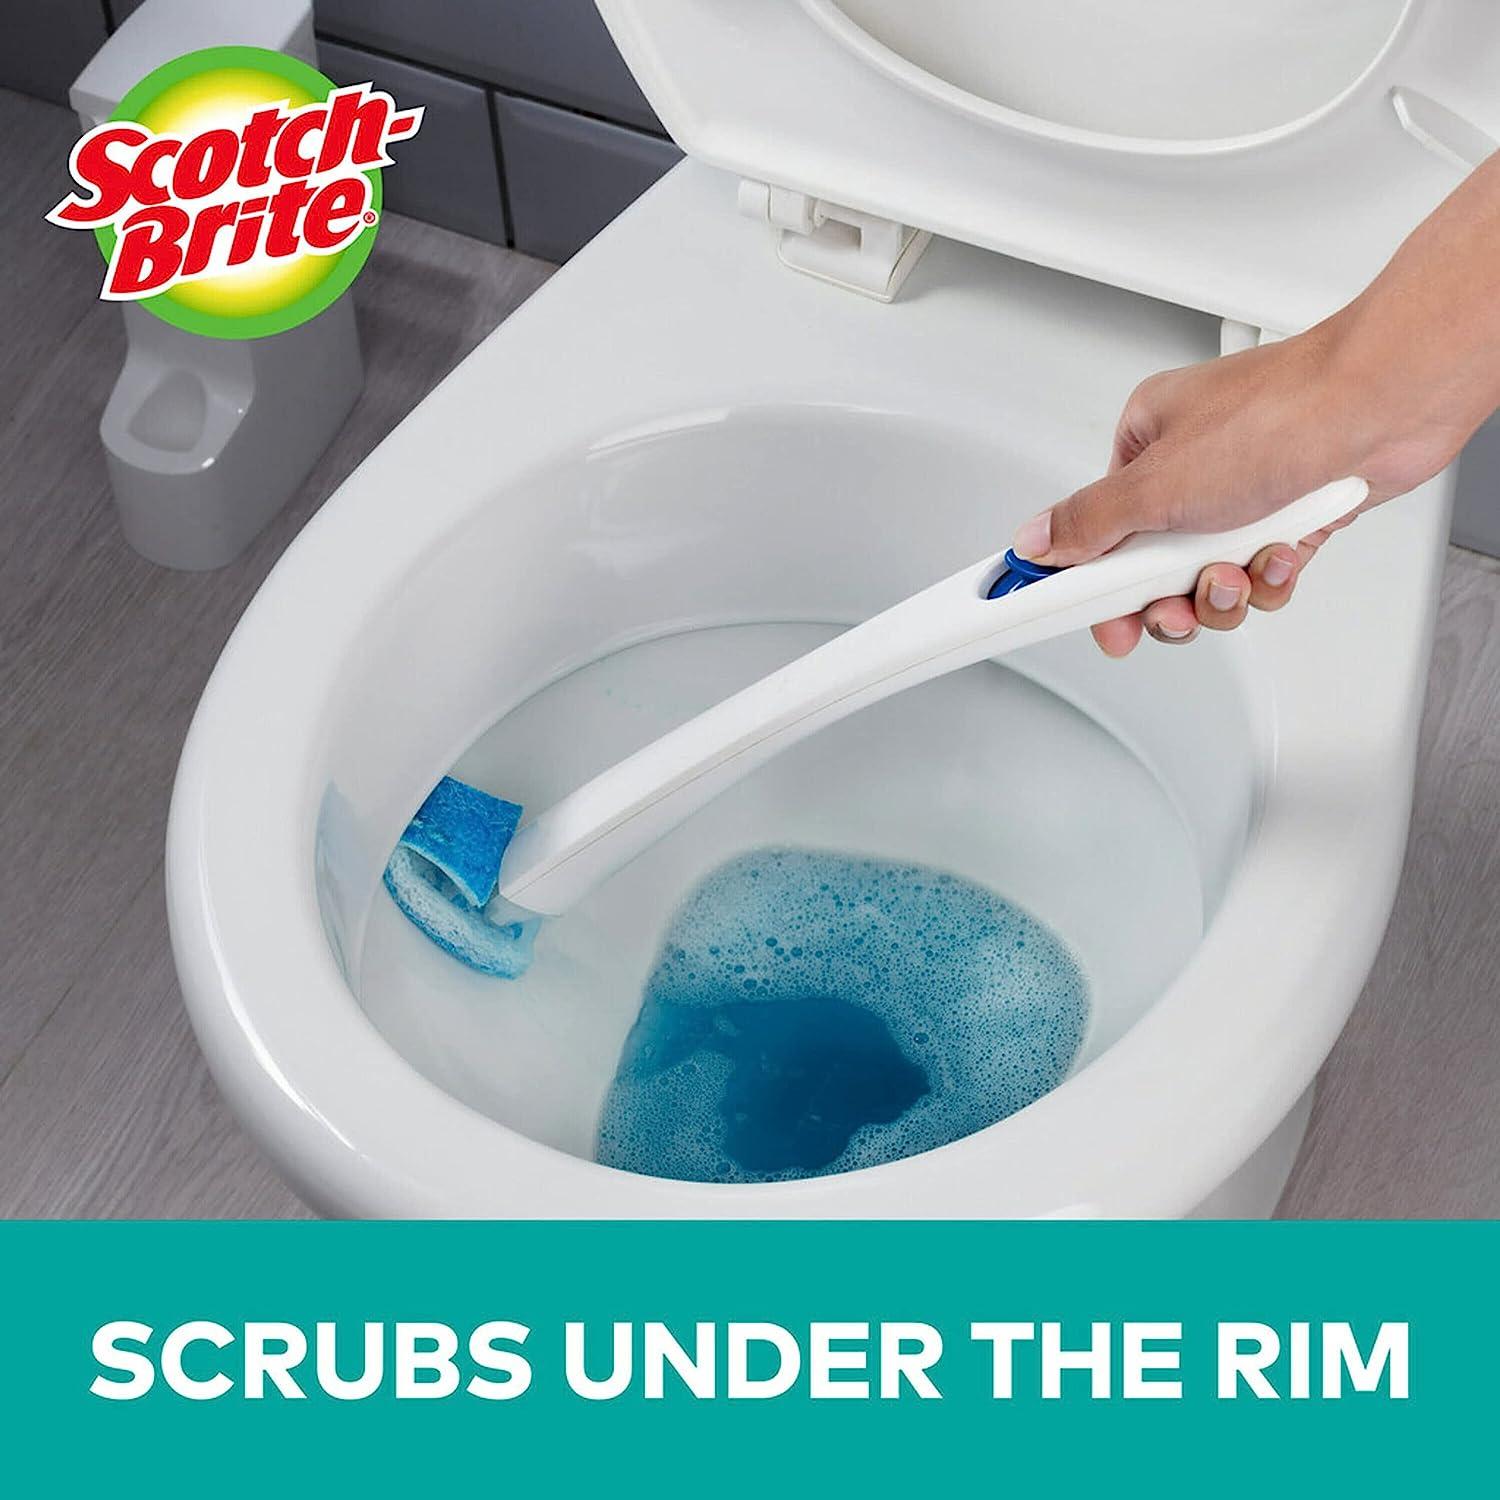 Scotch-Brite Non-Scratch Bathroom Scrub Brush Review